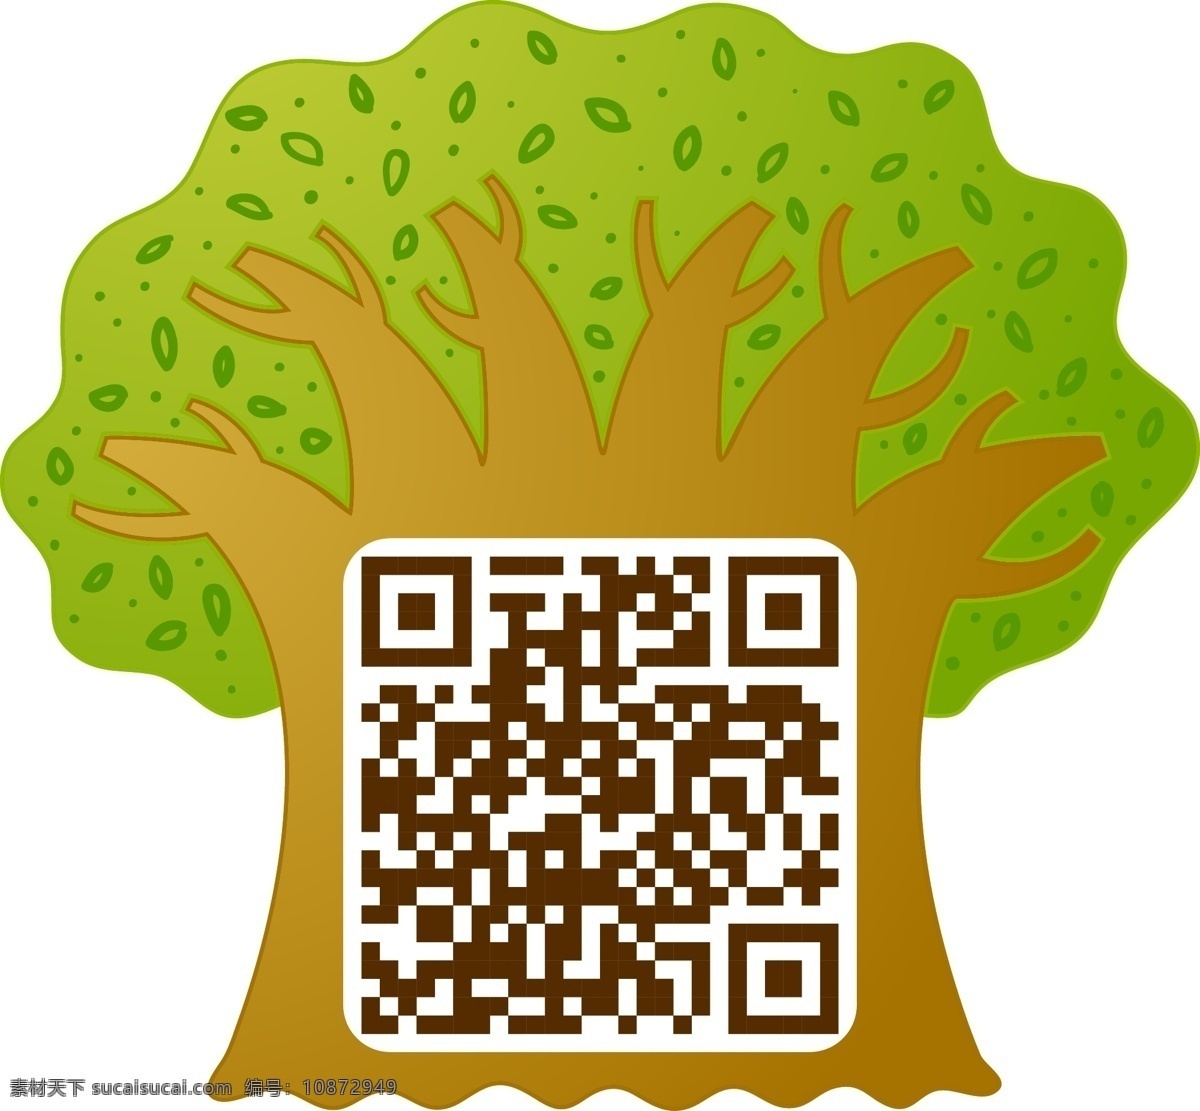 树与二维码 创意二维码 绿色 环保 漫画树 标志图标 公共标识标志